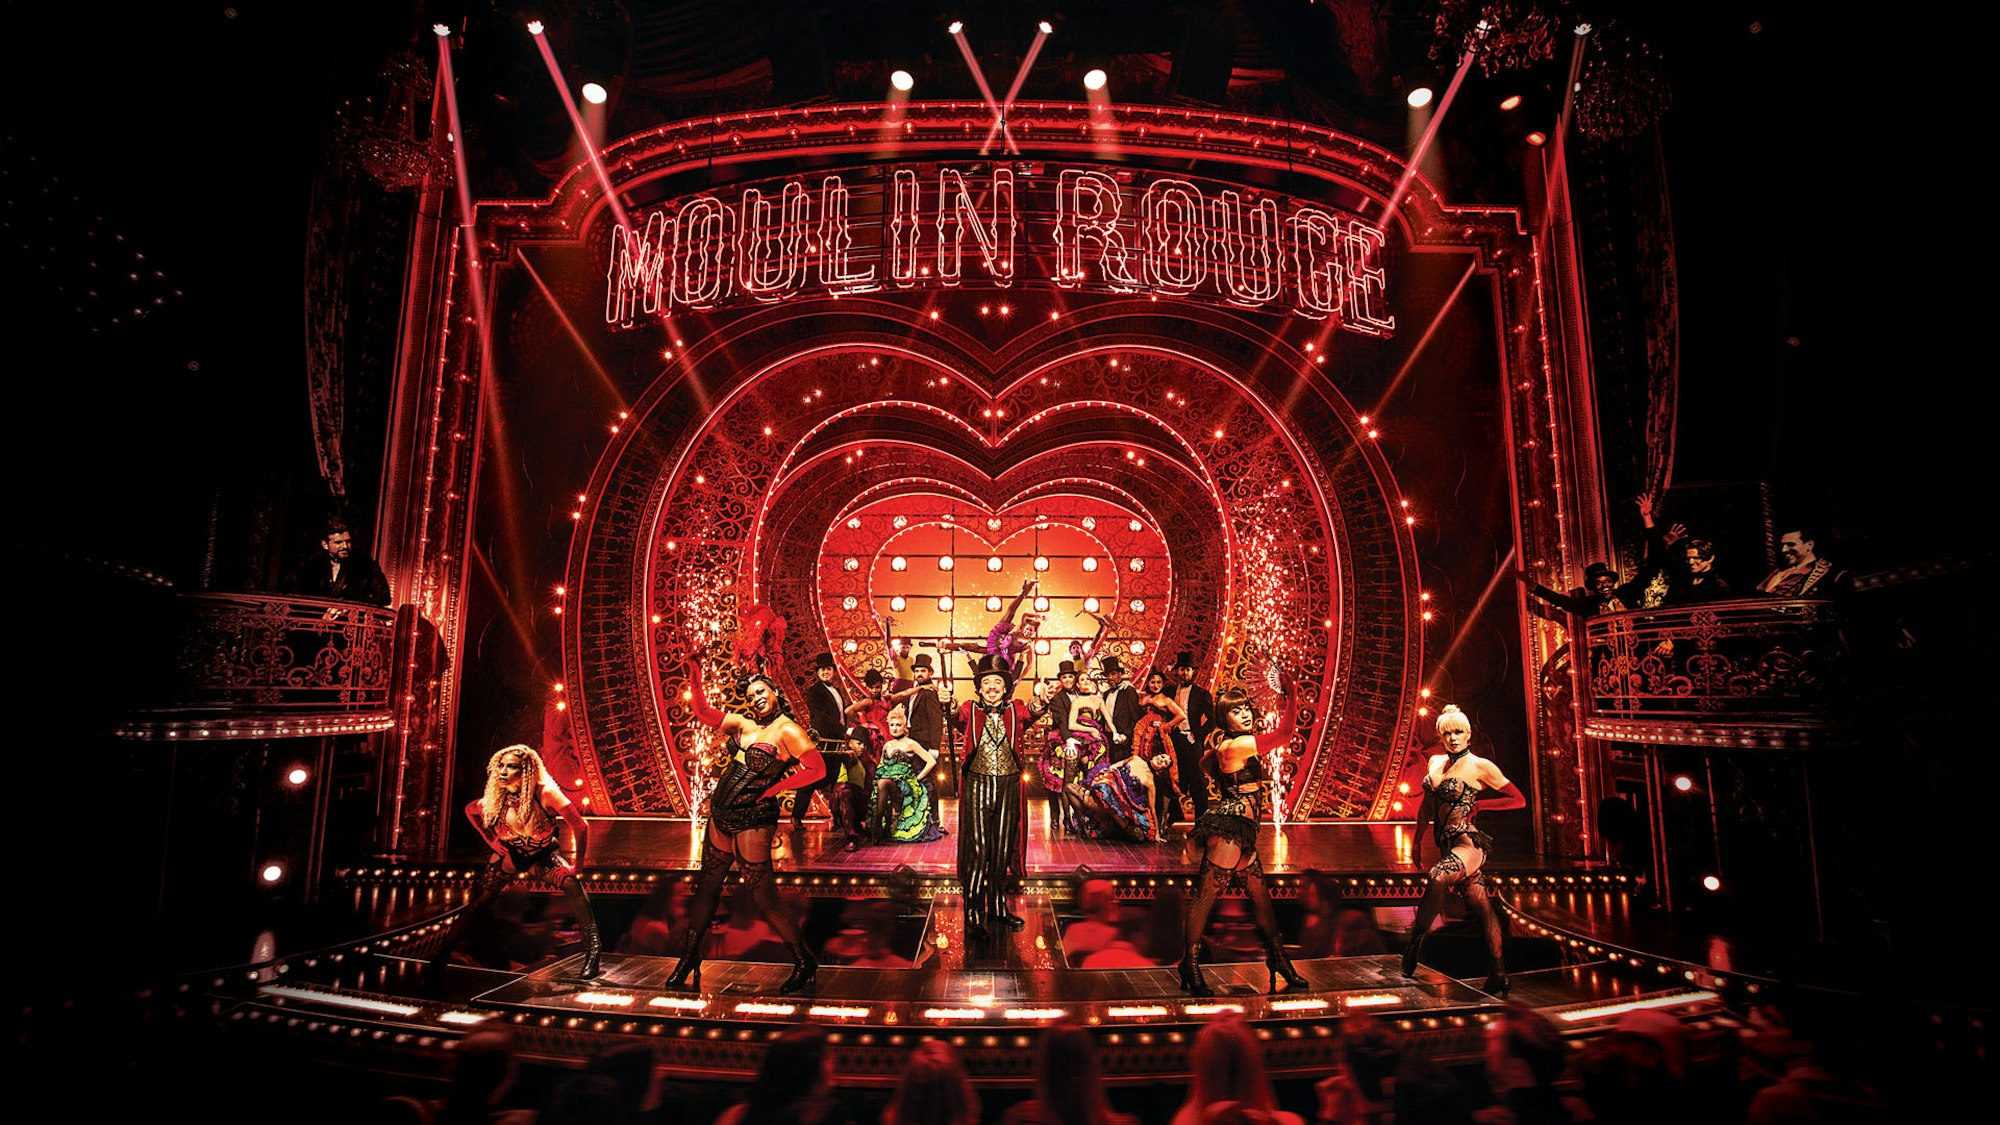 Die Bühne von Moulin Rouge mit viel Licht und allen Darstellern in Kostümen beim großen Finale.